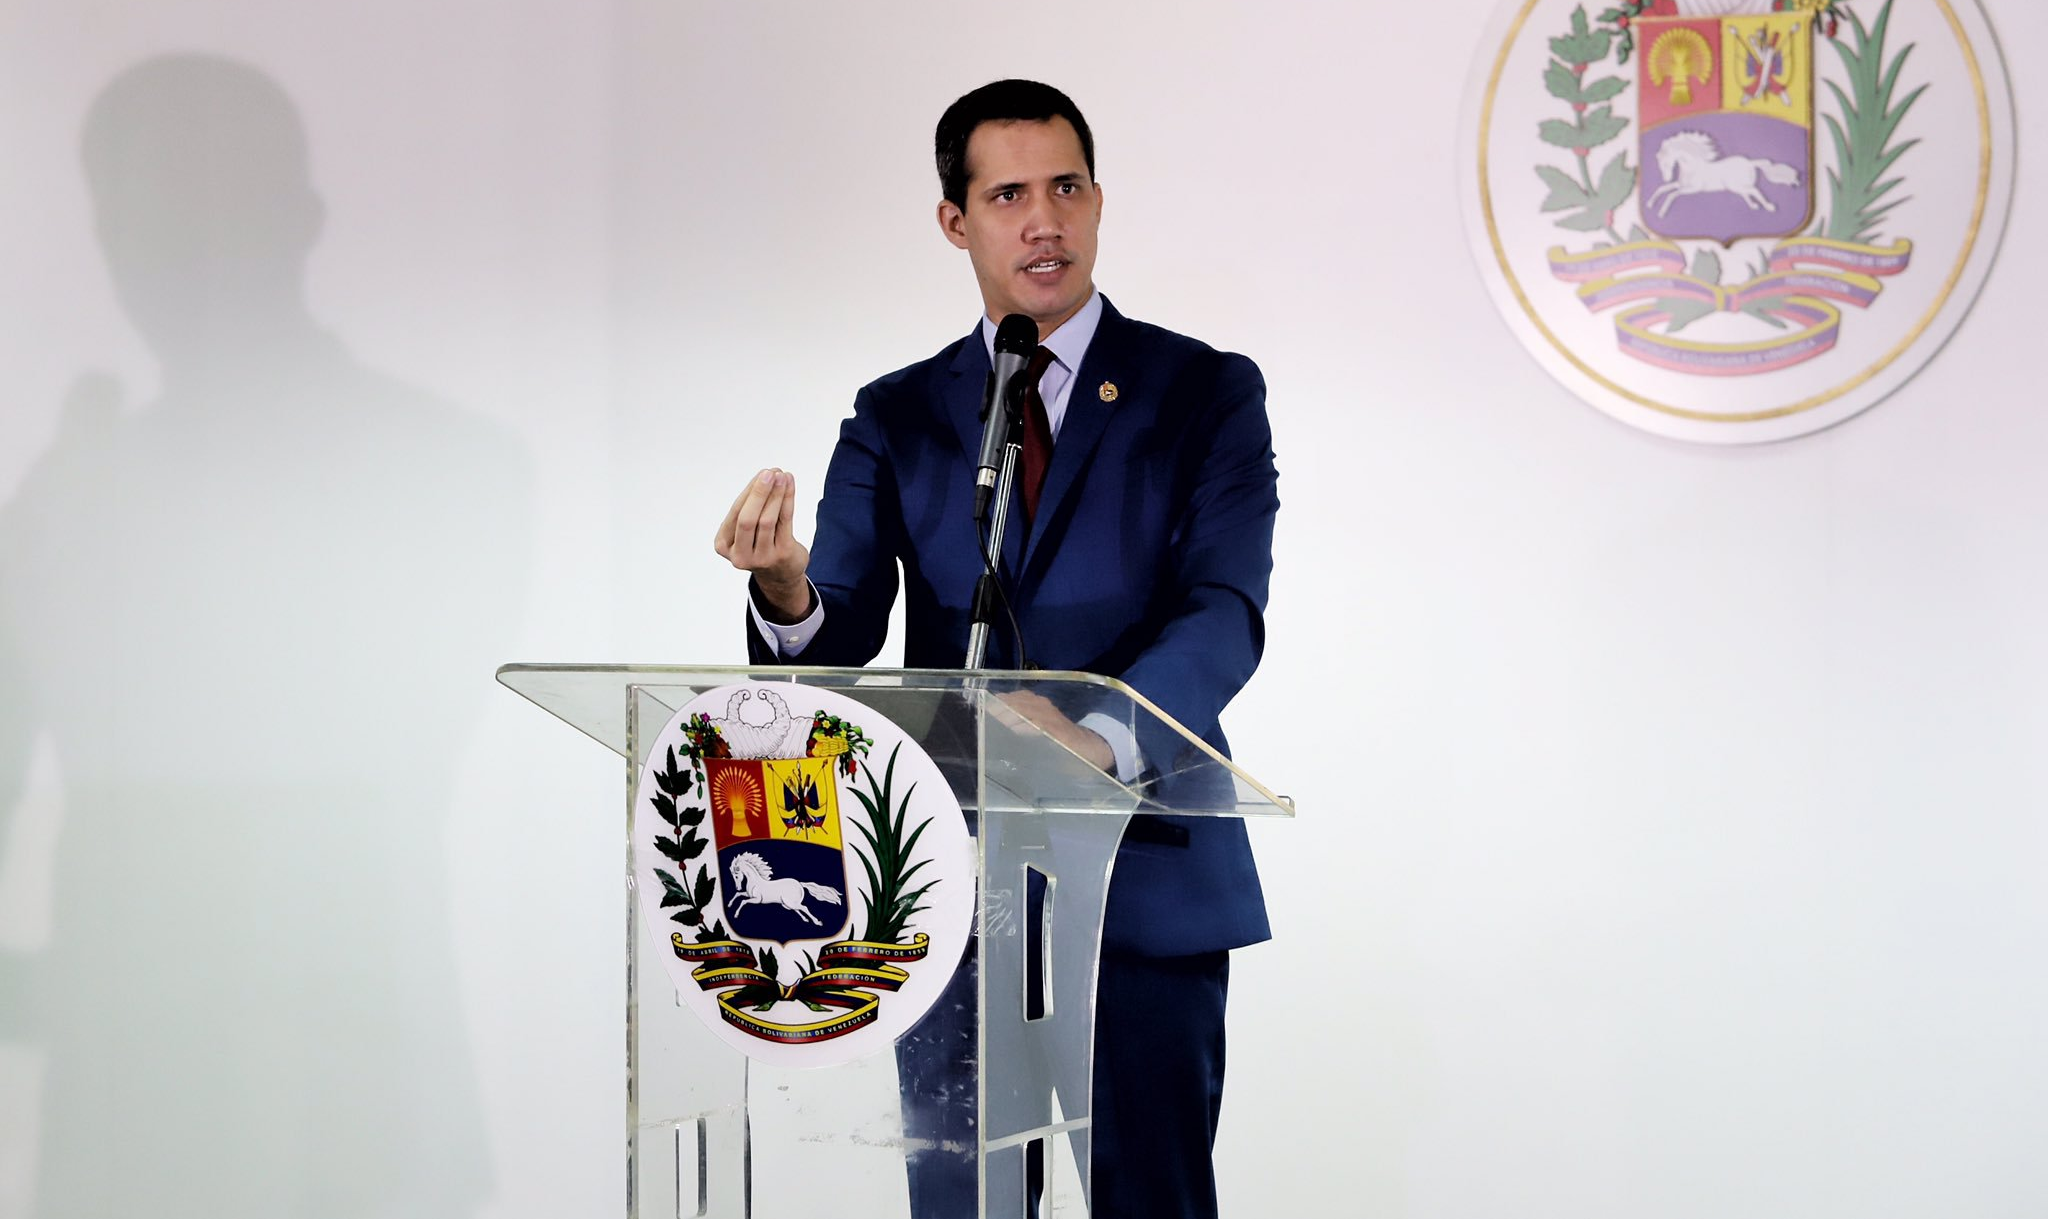 Declarações de líder opositor vêm após uma investigação divulgada no último domingo revelar denúncias de corrupção contra aliados de Guaidó